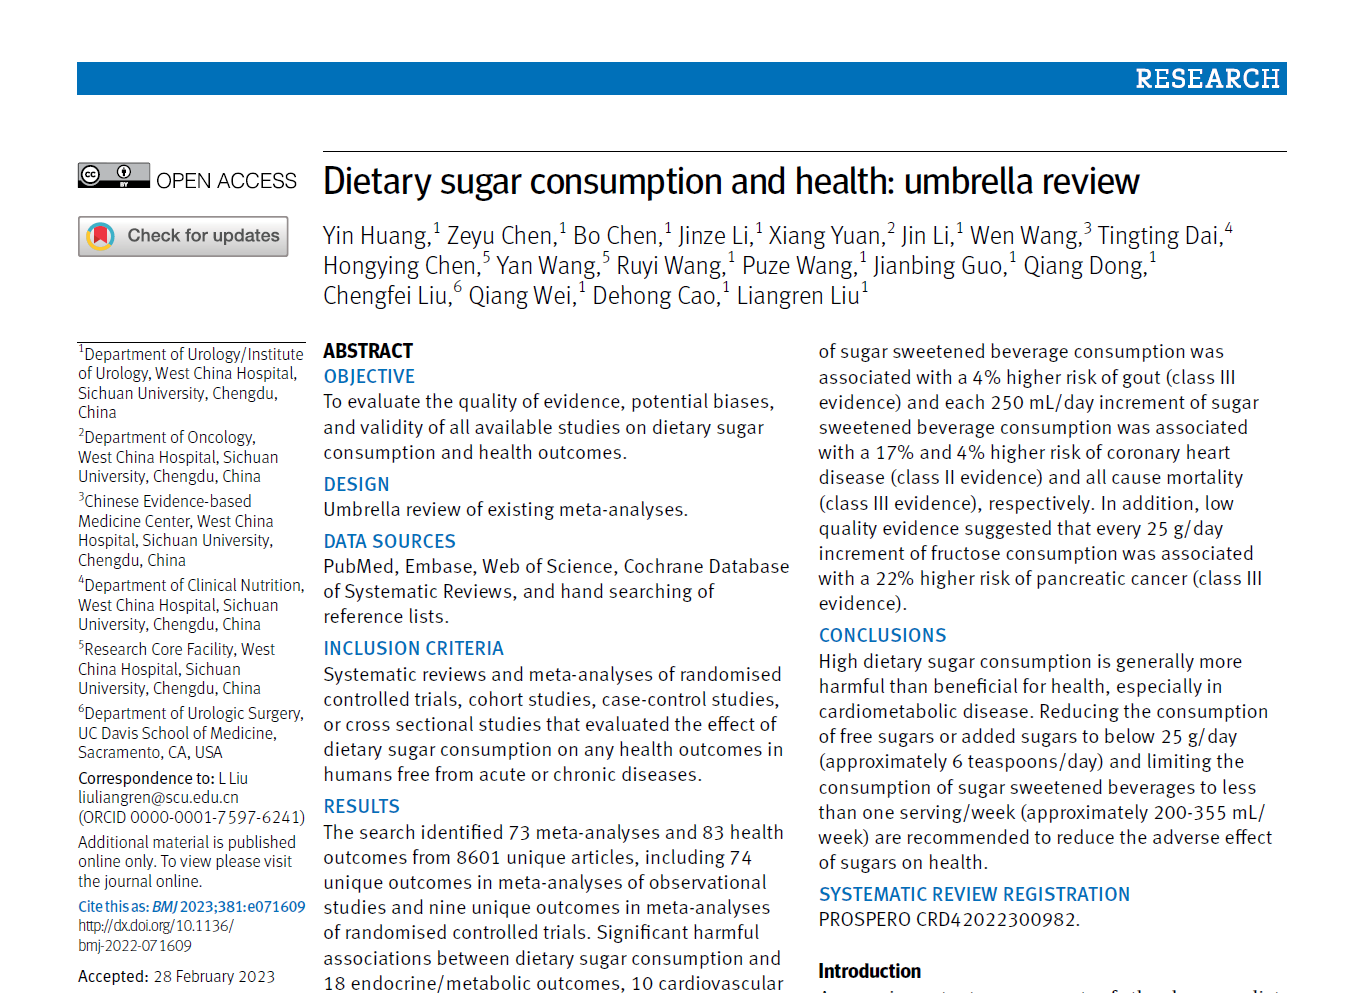 我校华西医院魏强团队发文揭示膳食糖摄入与45种疾病之间的有害关联